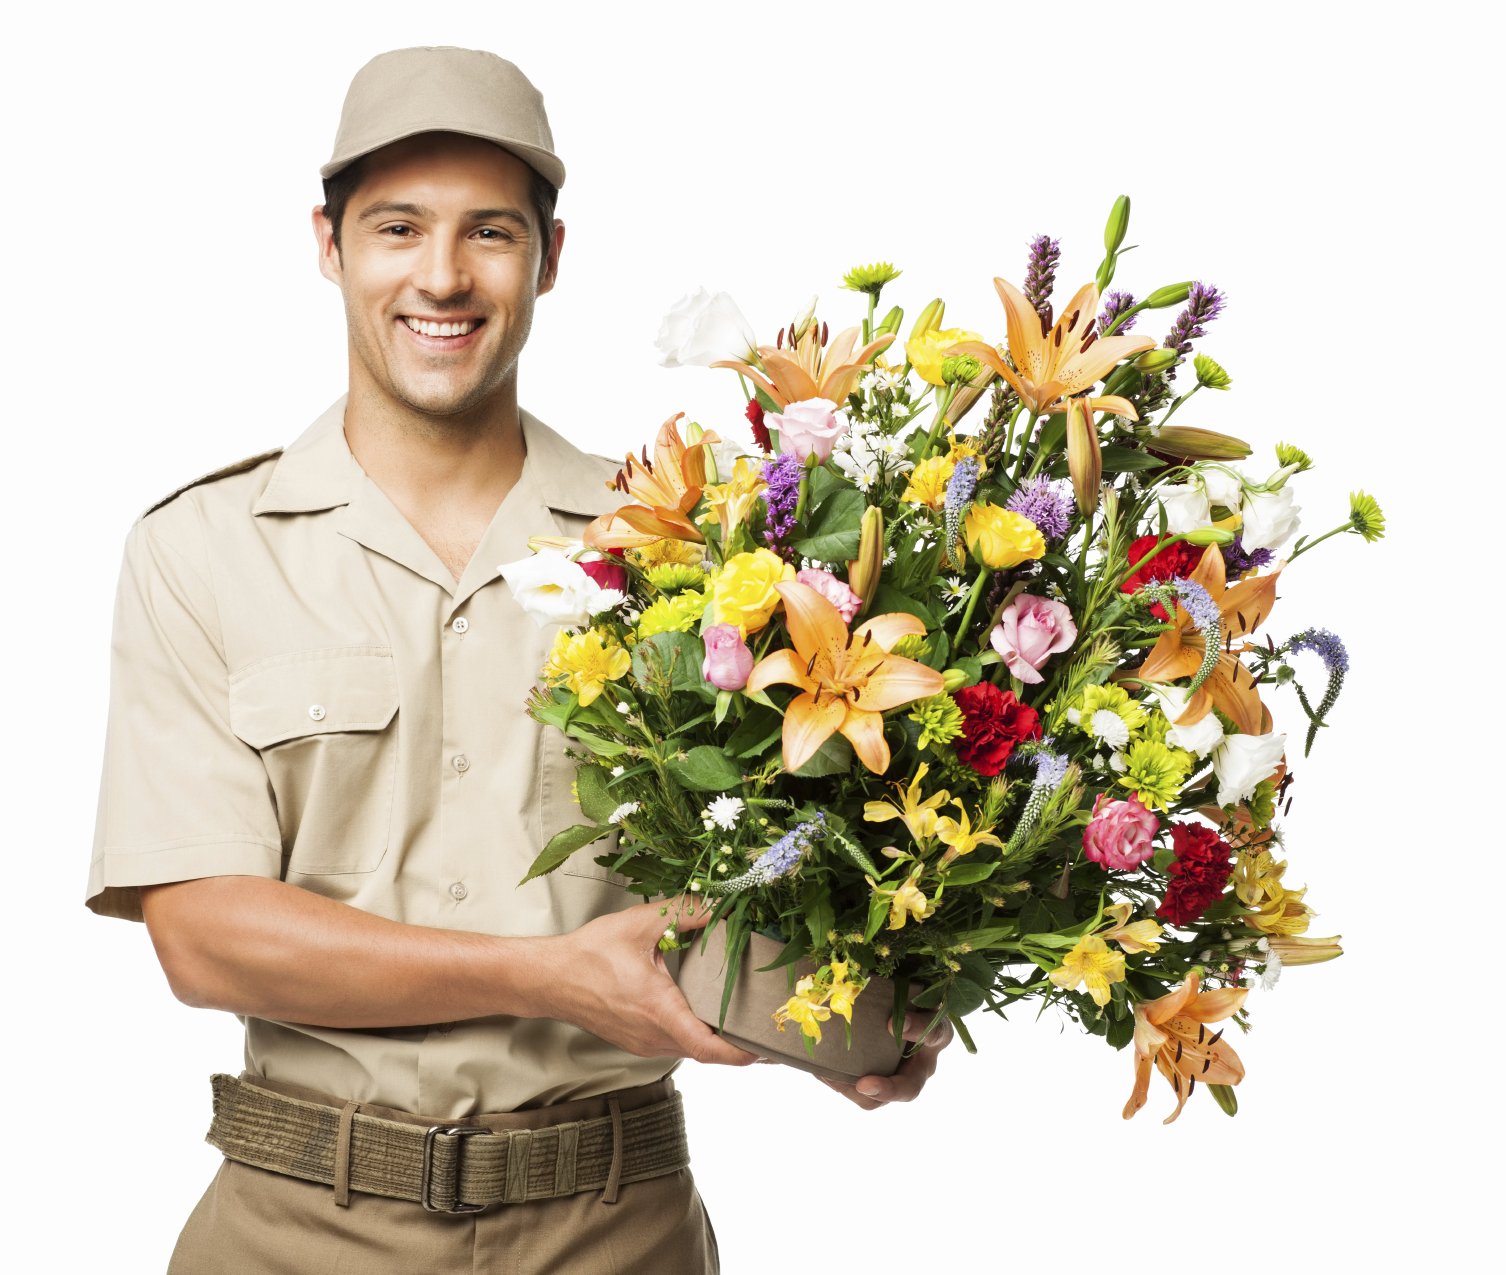 Картинка мужчина дарящего цветы. Мужчина с цветами. Человек с букетом цветов. Букет цветов для мужчины. Парень с букетом.